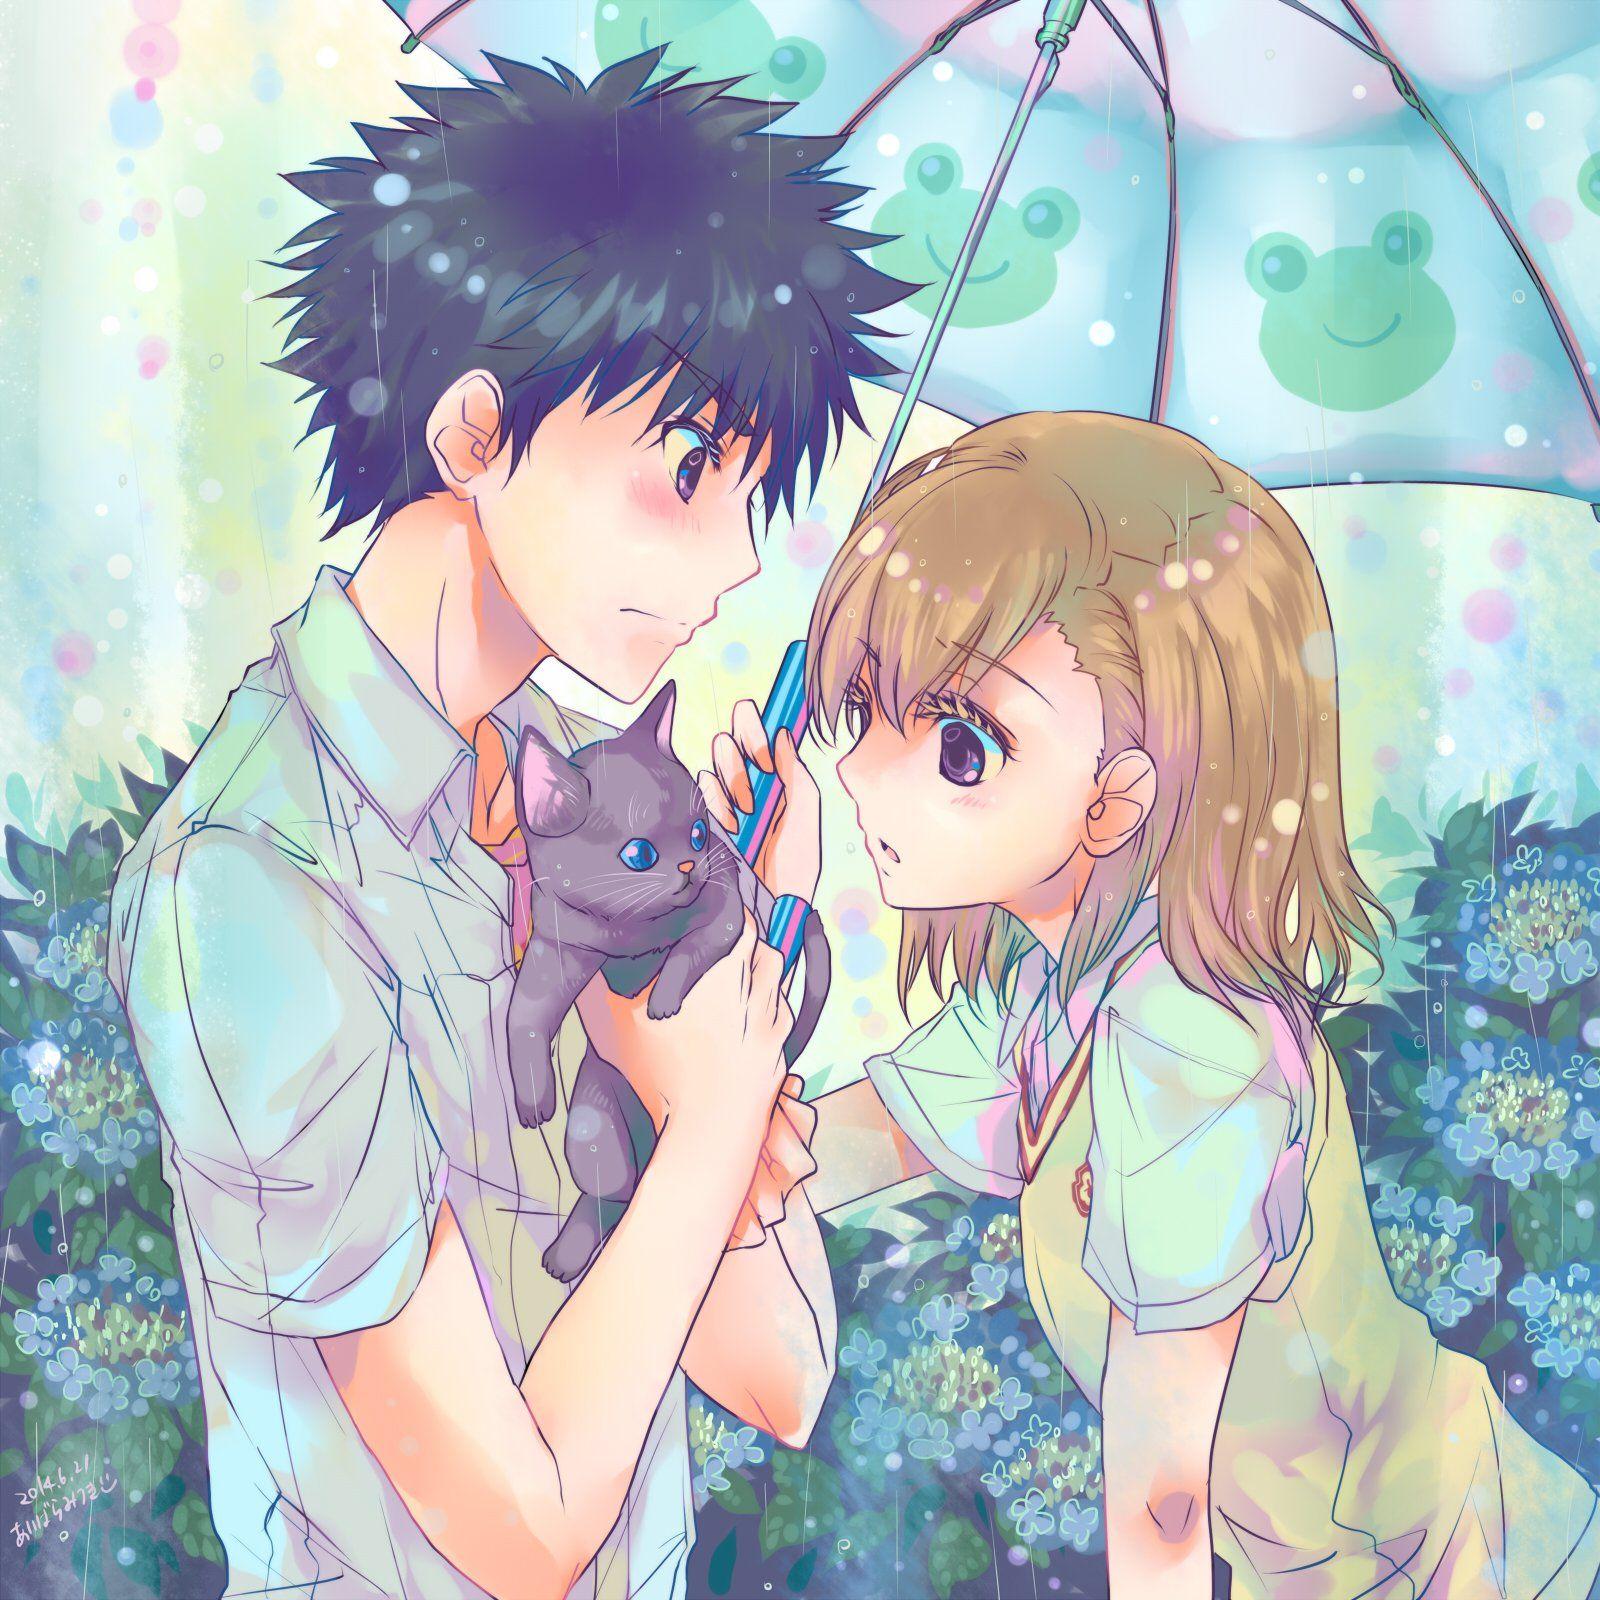 Cute Anime Couples Wallpaper Umbrella Anime Couple Cat Cute Girl Boy